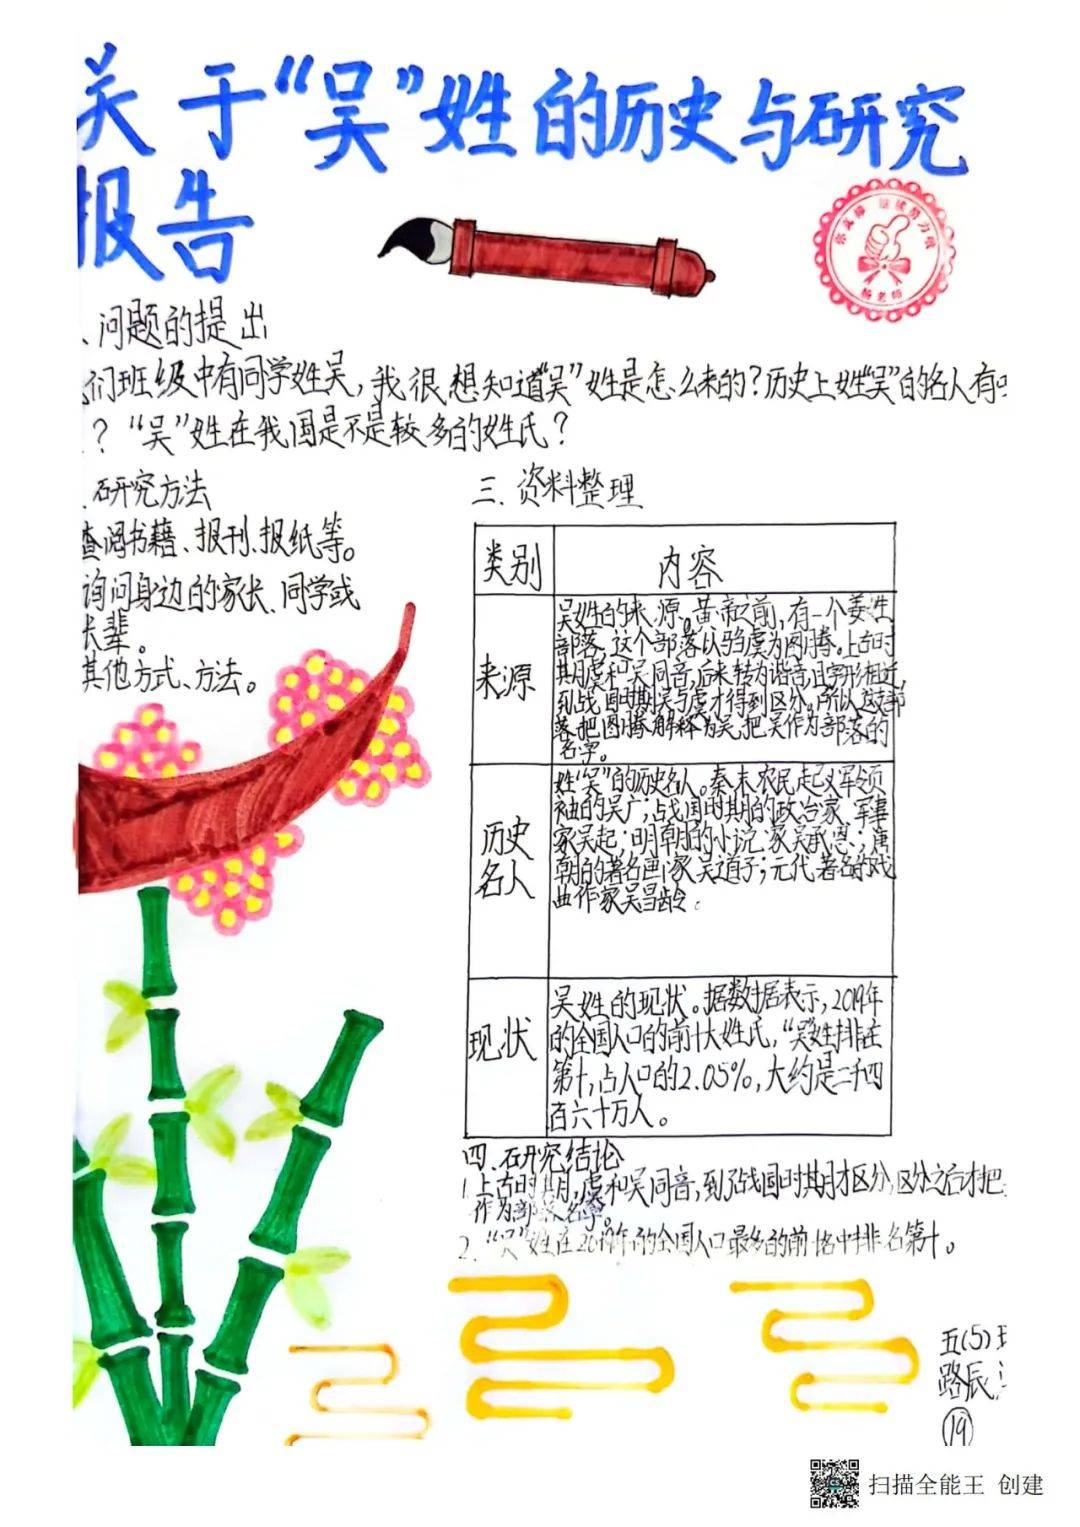 领略汉字之美 遨游汉字王国——五年级汉字真有趣实践活动